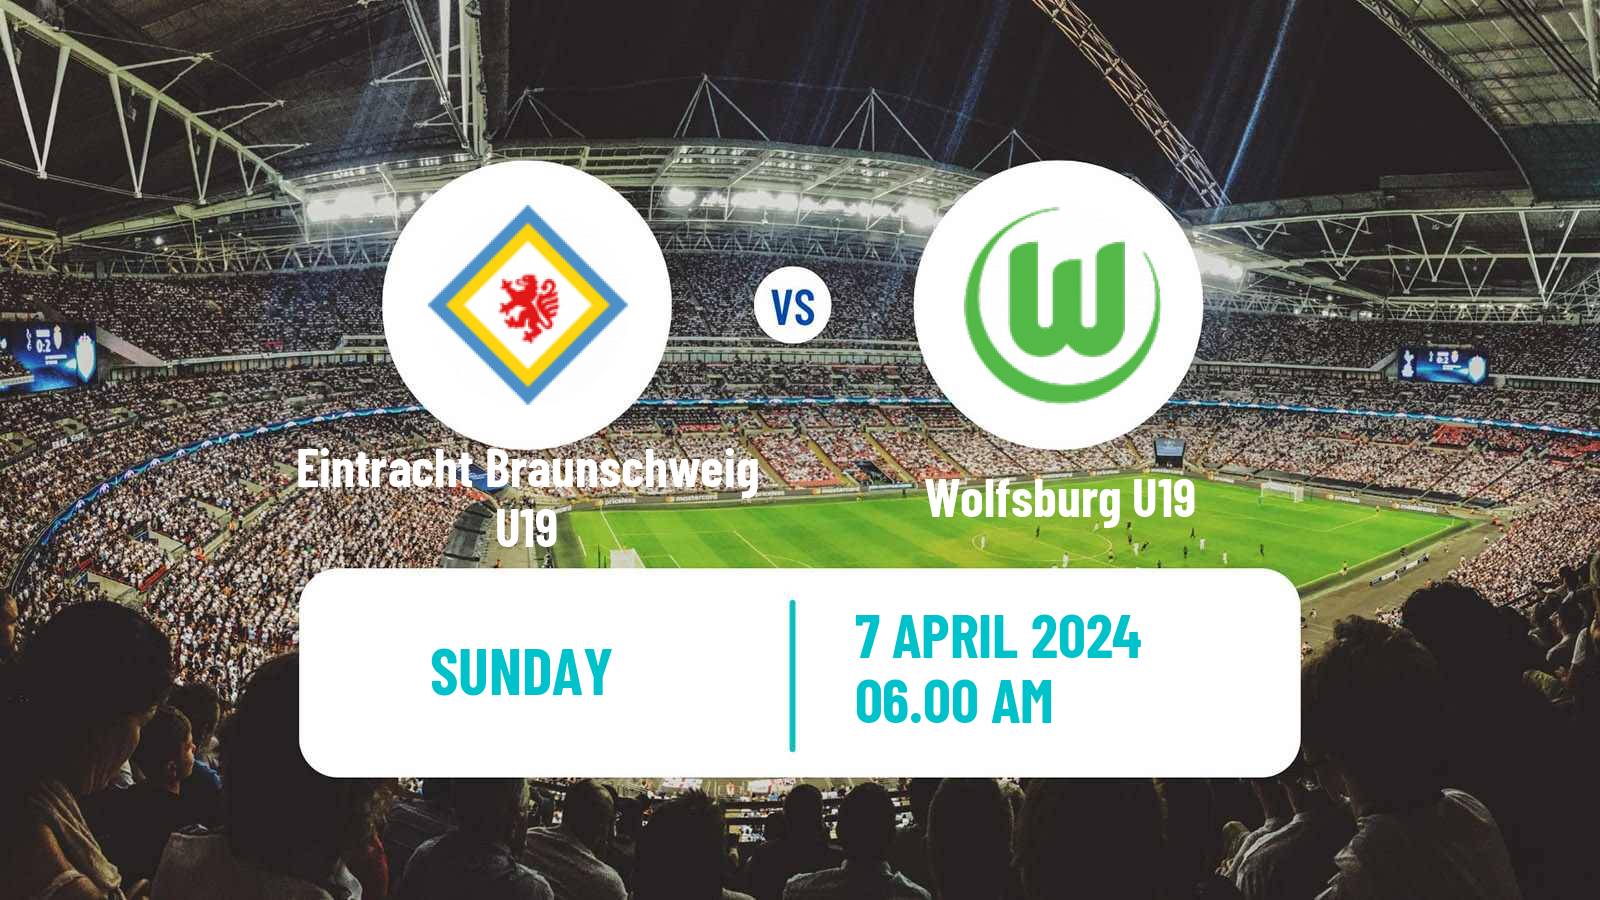 Soccer German Junioren Bundesliga North Eintracht Braunschweig U19 - Wolfsburg U19